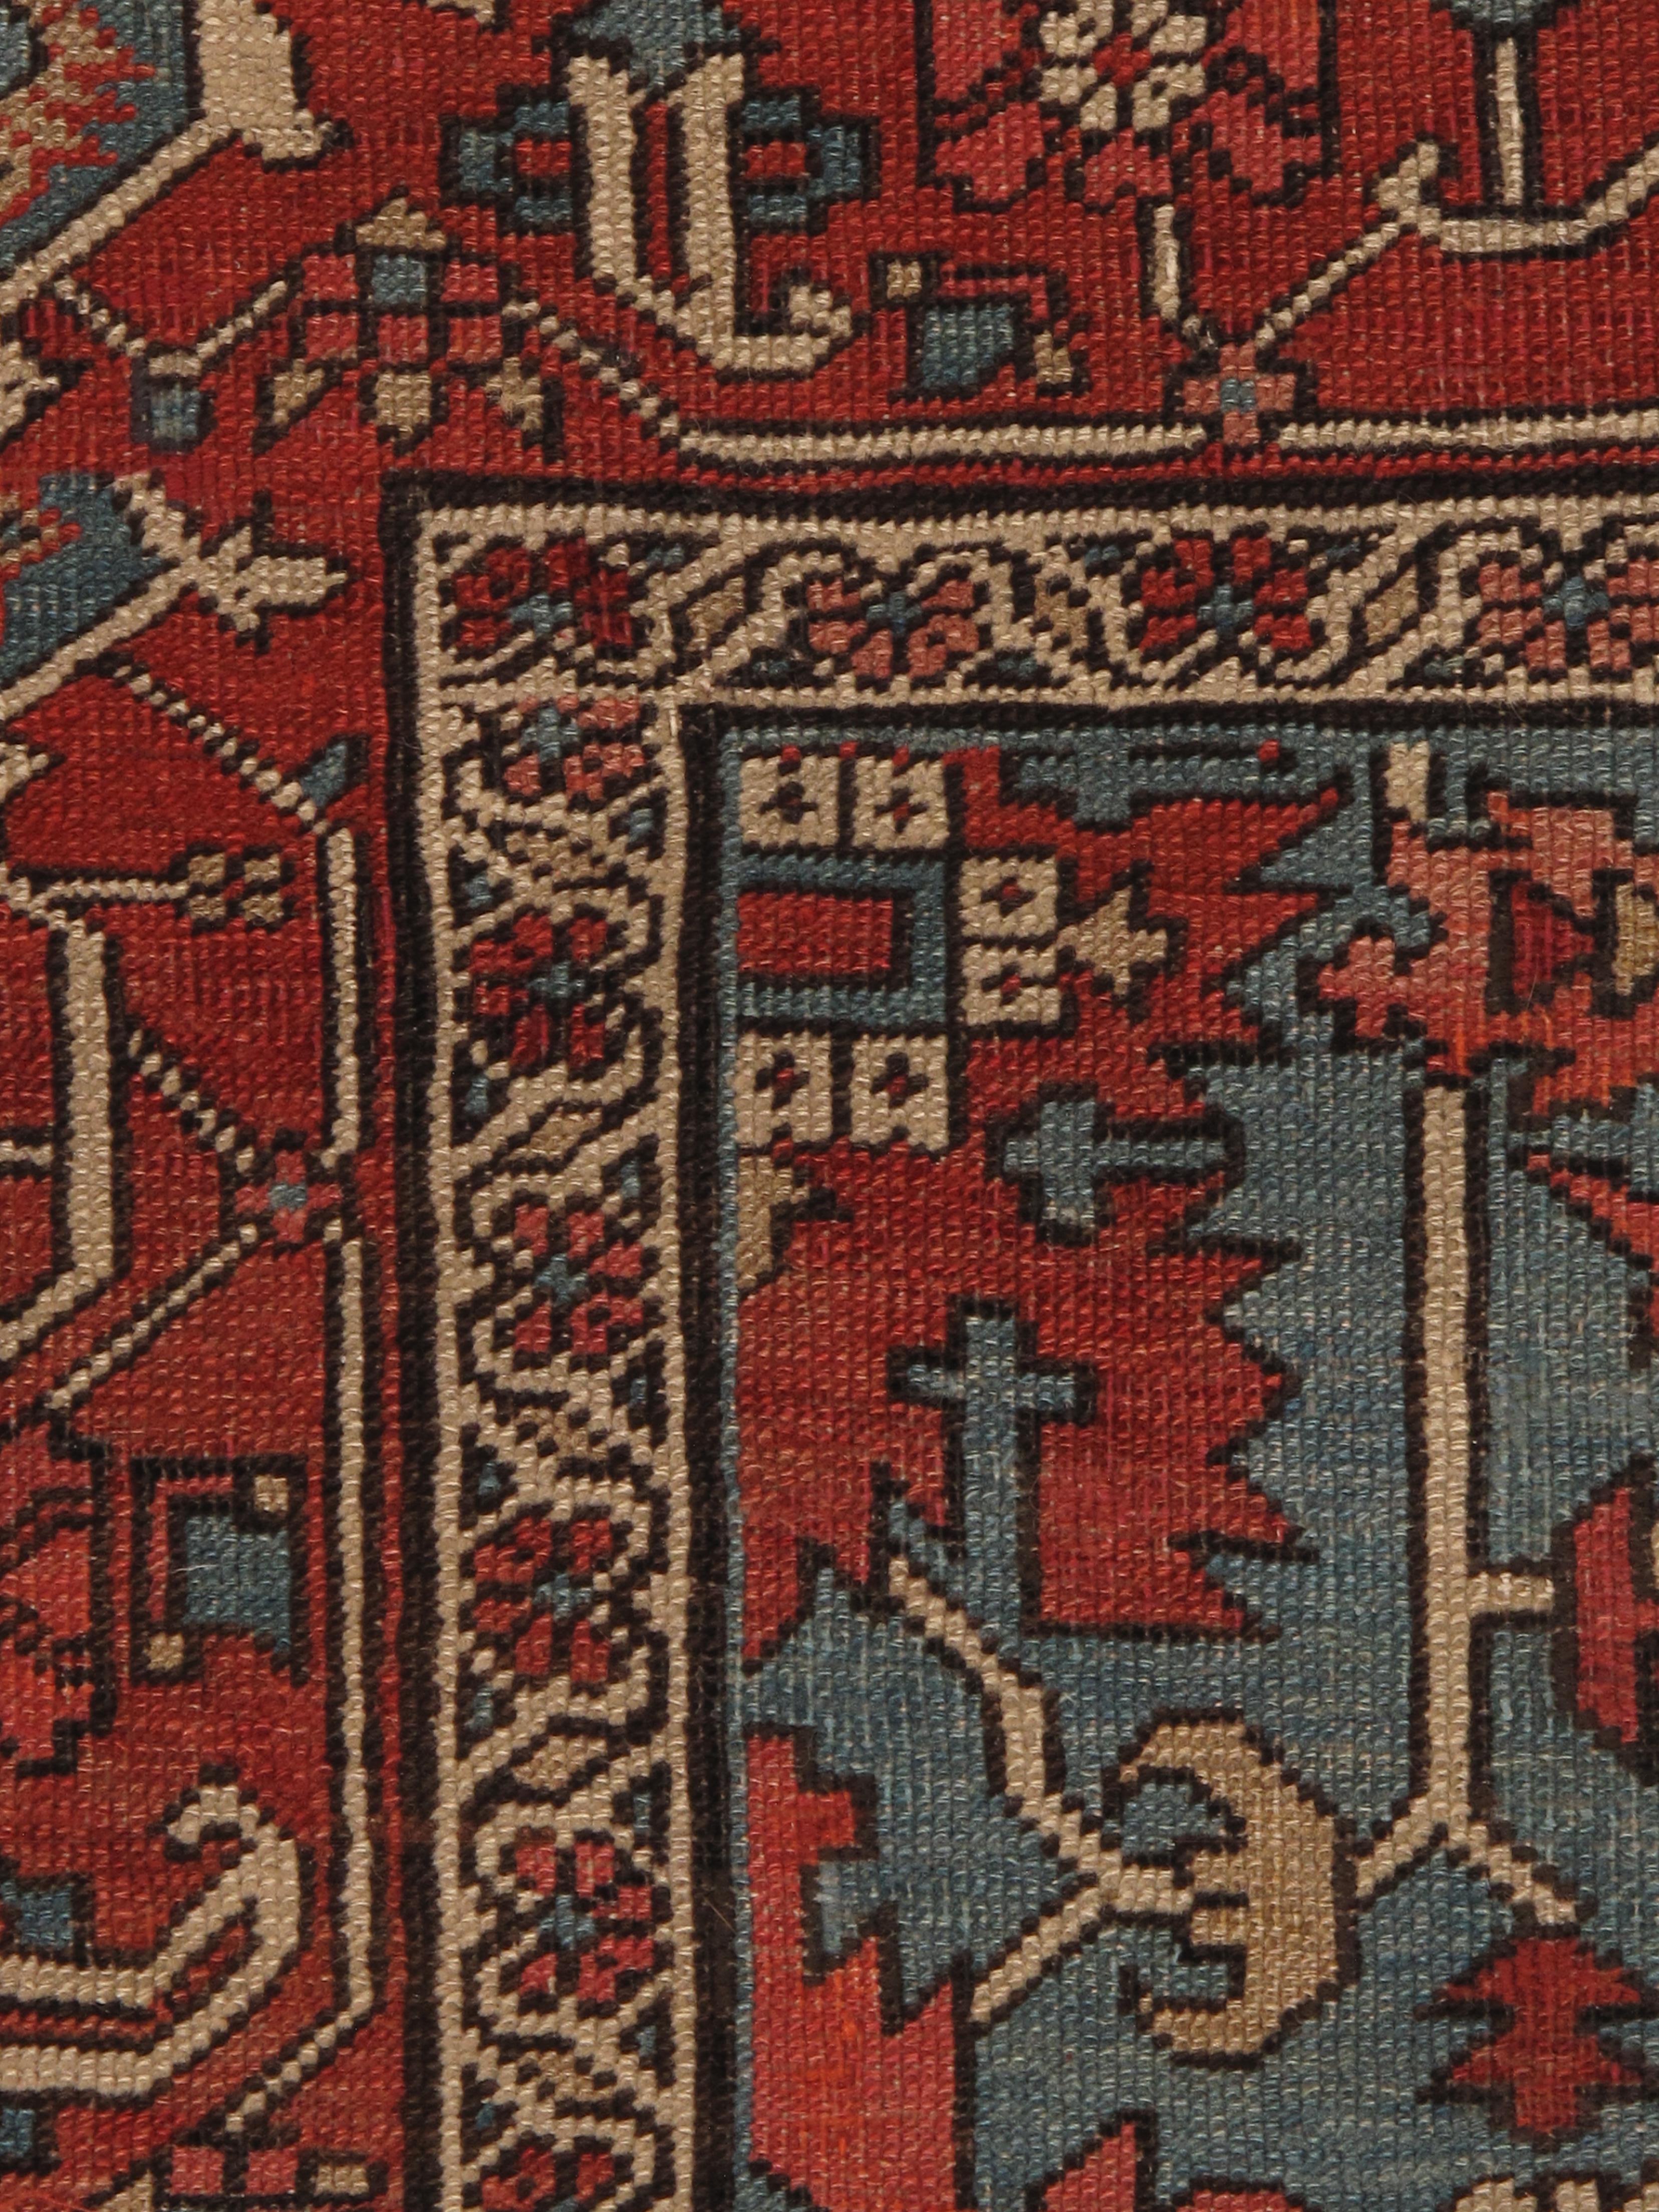 Die Serapi-Teppiche aus dem späten 19. und frühen 20. Jahrhundert stellen einen Höhepunkt der künstlerischen Leistung in der persischen Teppichweberei dar. Diese Teppiche stammen aus dem Dorf Serab in der Region Heriz im Nordwesten Persiens (heute